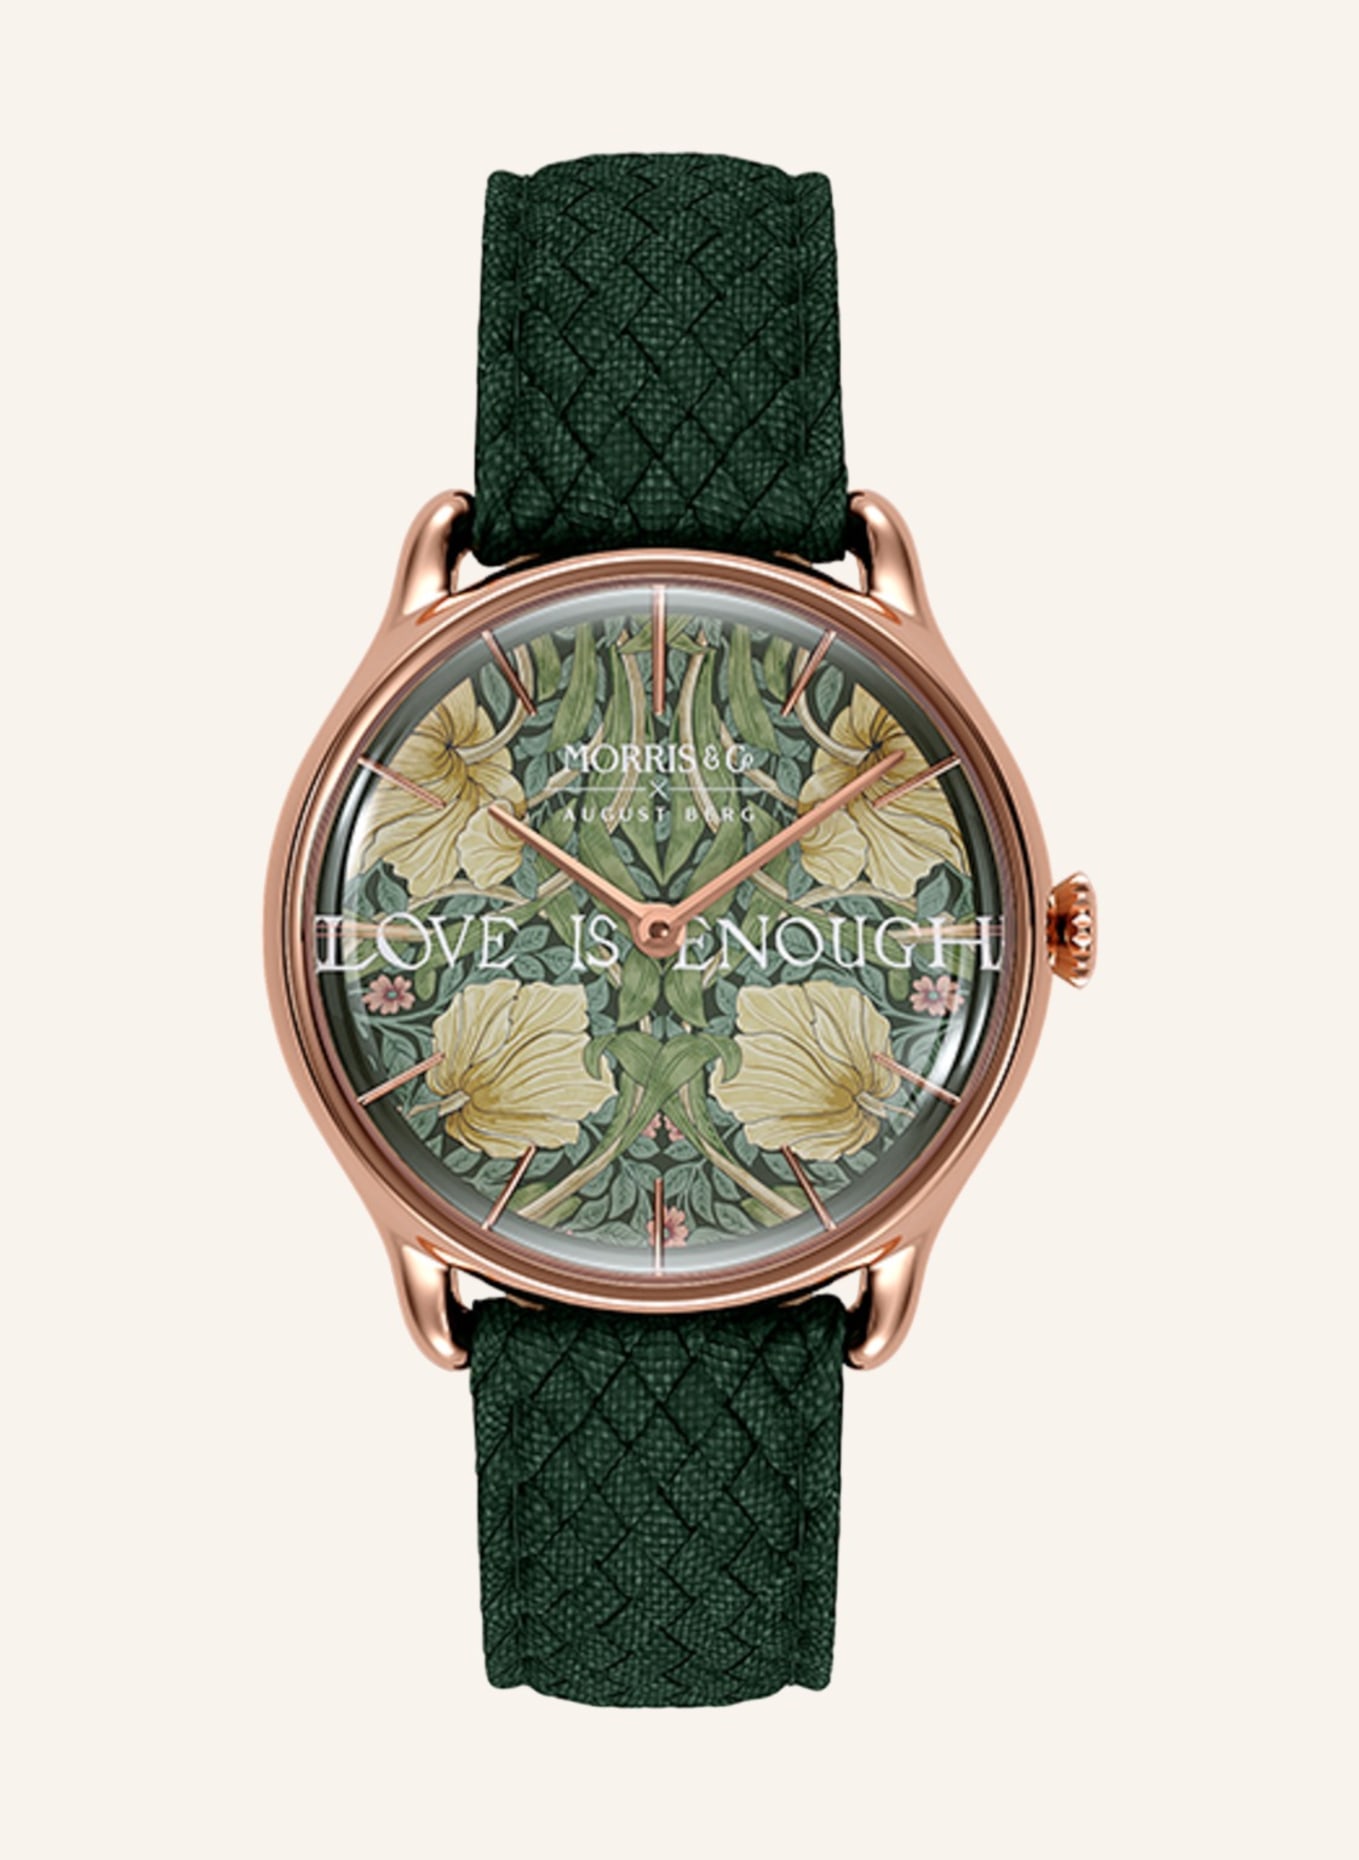 AUGUST BERG Armbanduhr Morris & Co., Farbe: DUNKELGRÜN (Bild 1)